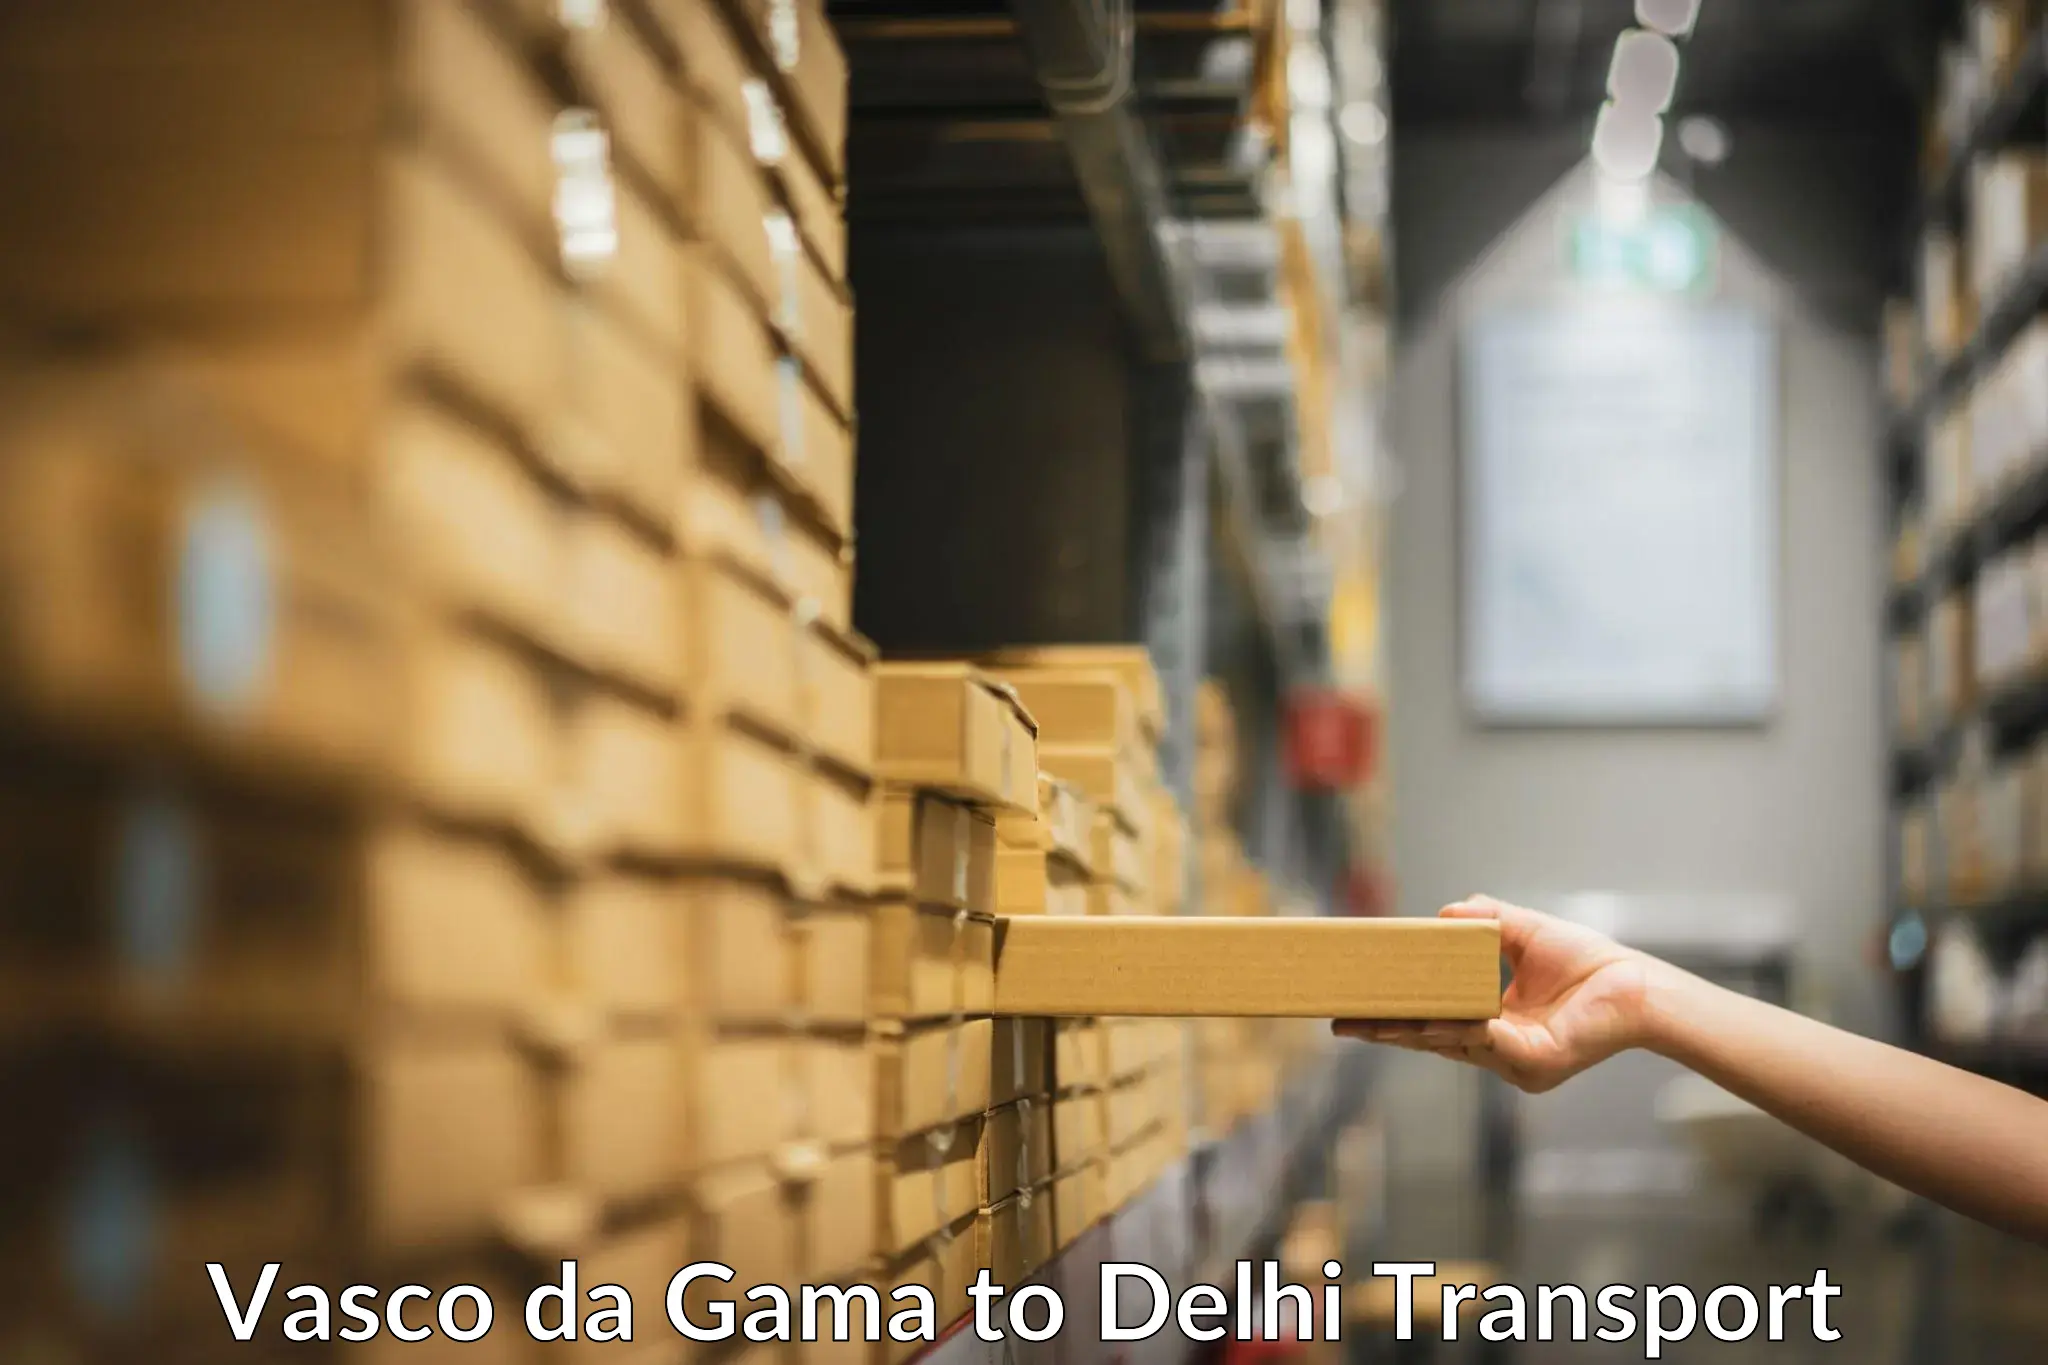 Domestic goods transportation services Vasco da Gama to Delhi